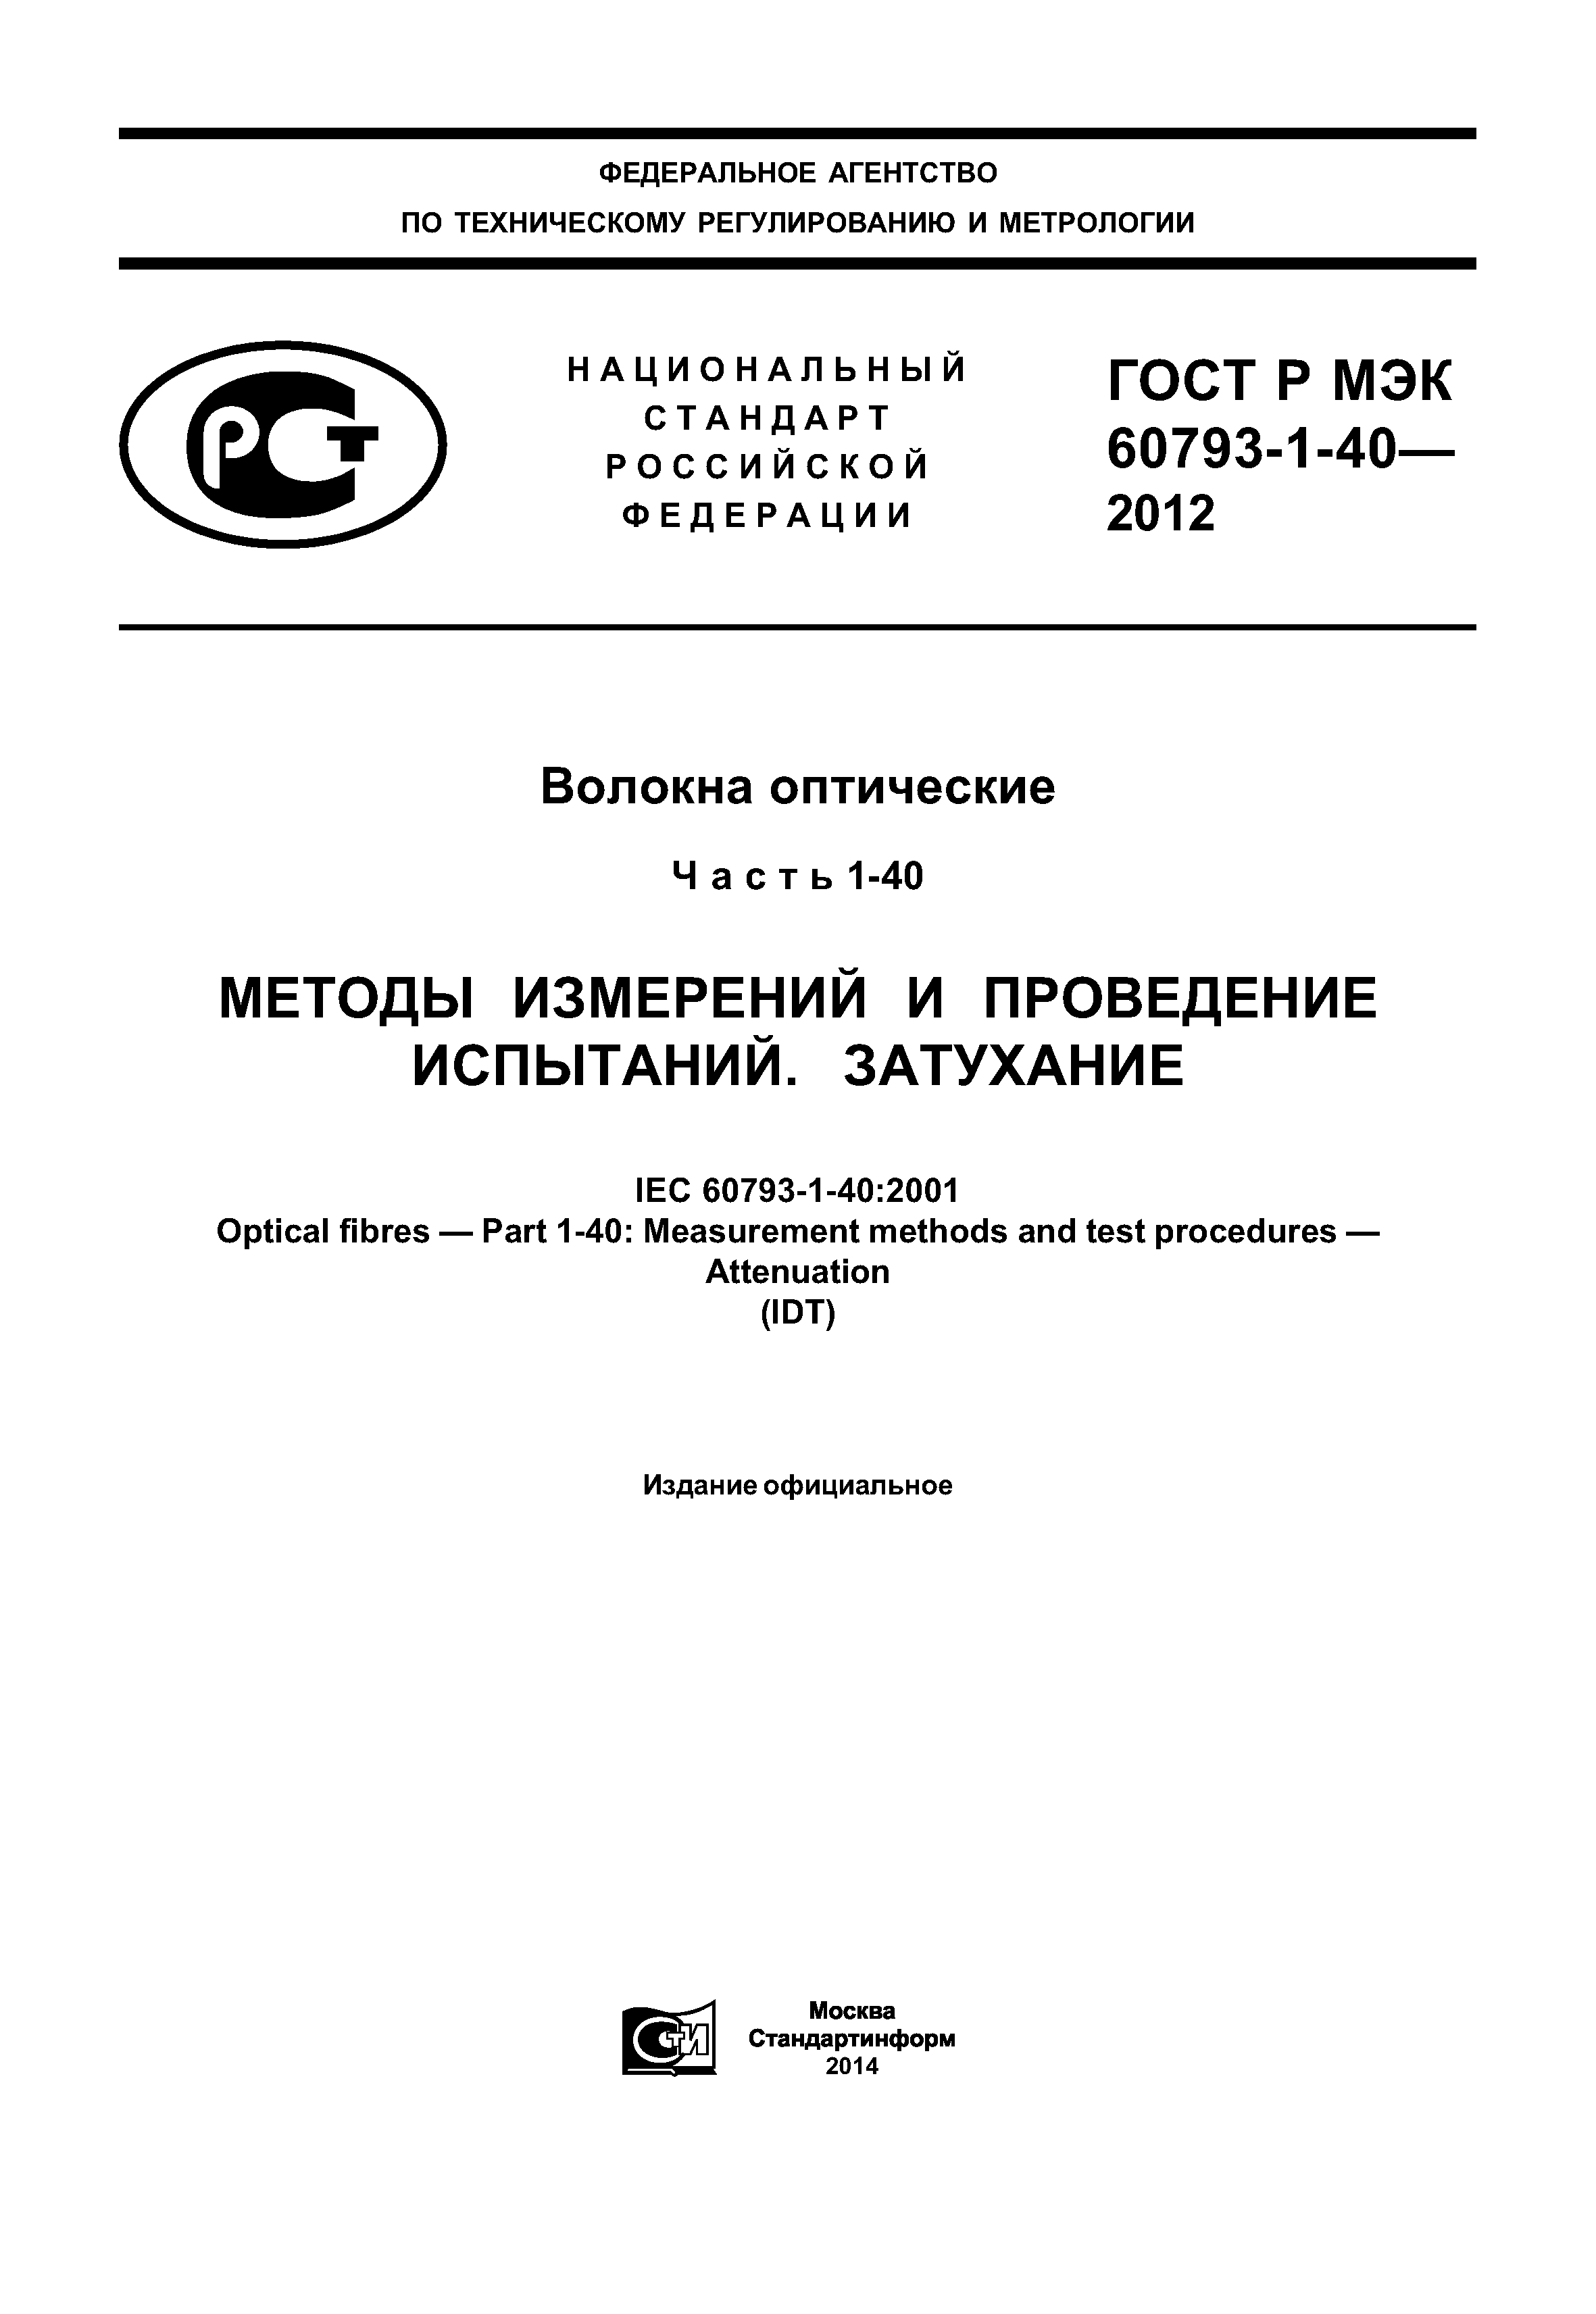 ГОСТ Р МЭК 60793-1-40-2012